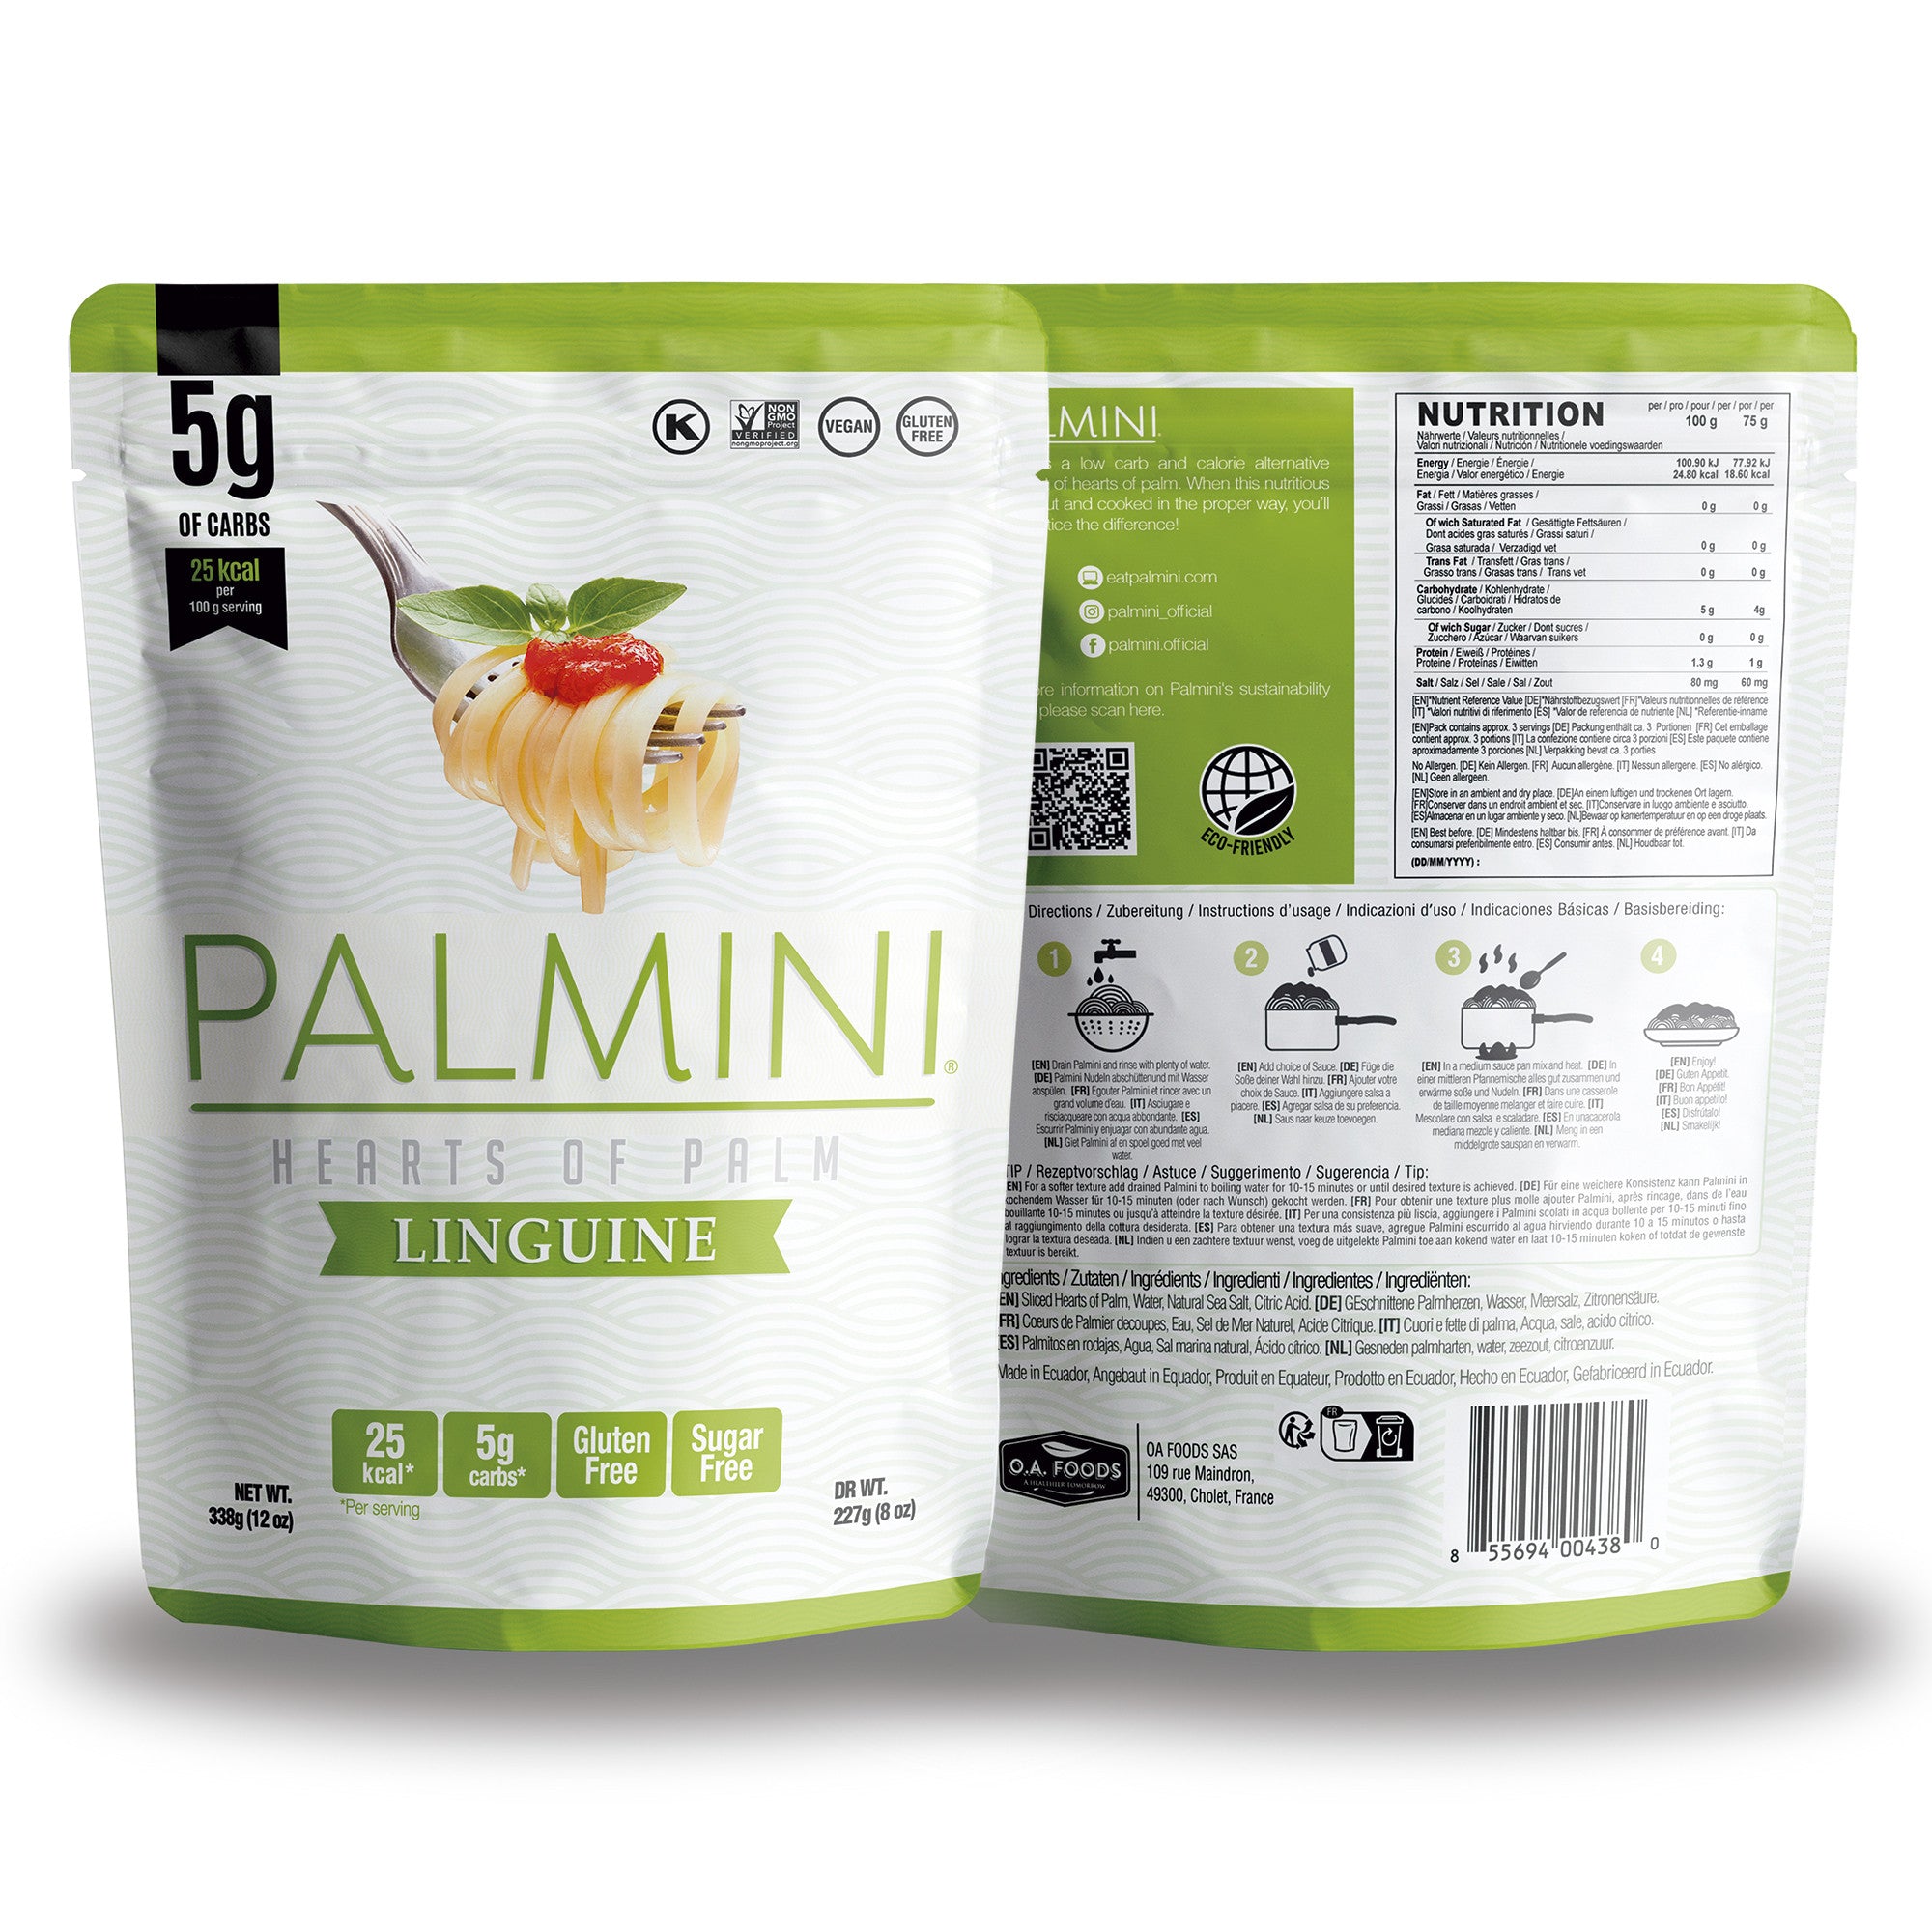 Palmini - Linguine - Carboidrati 4 g - Senza Glutine - Confezione da 340 g